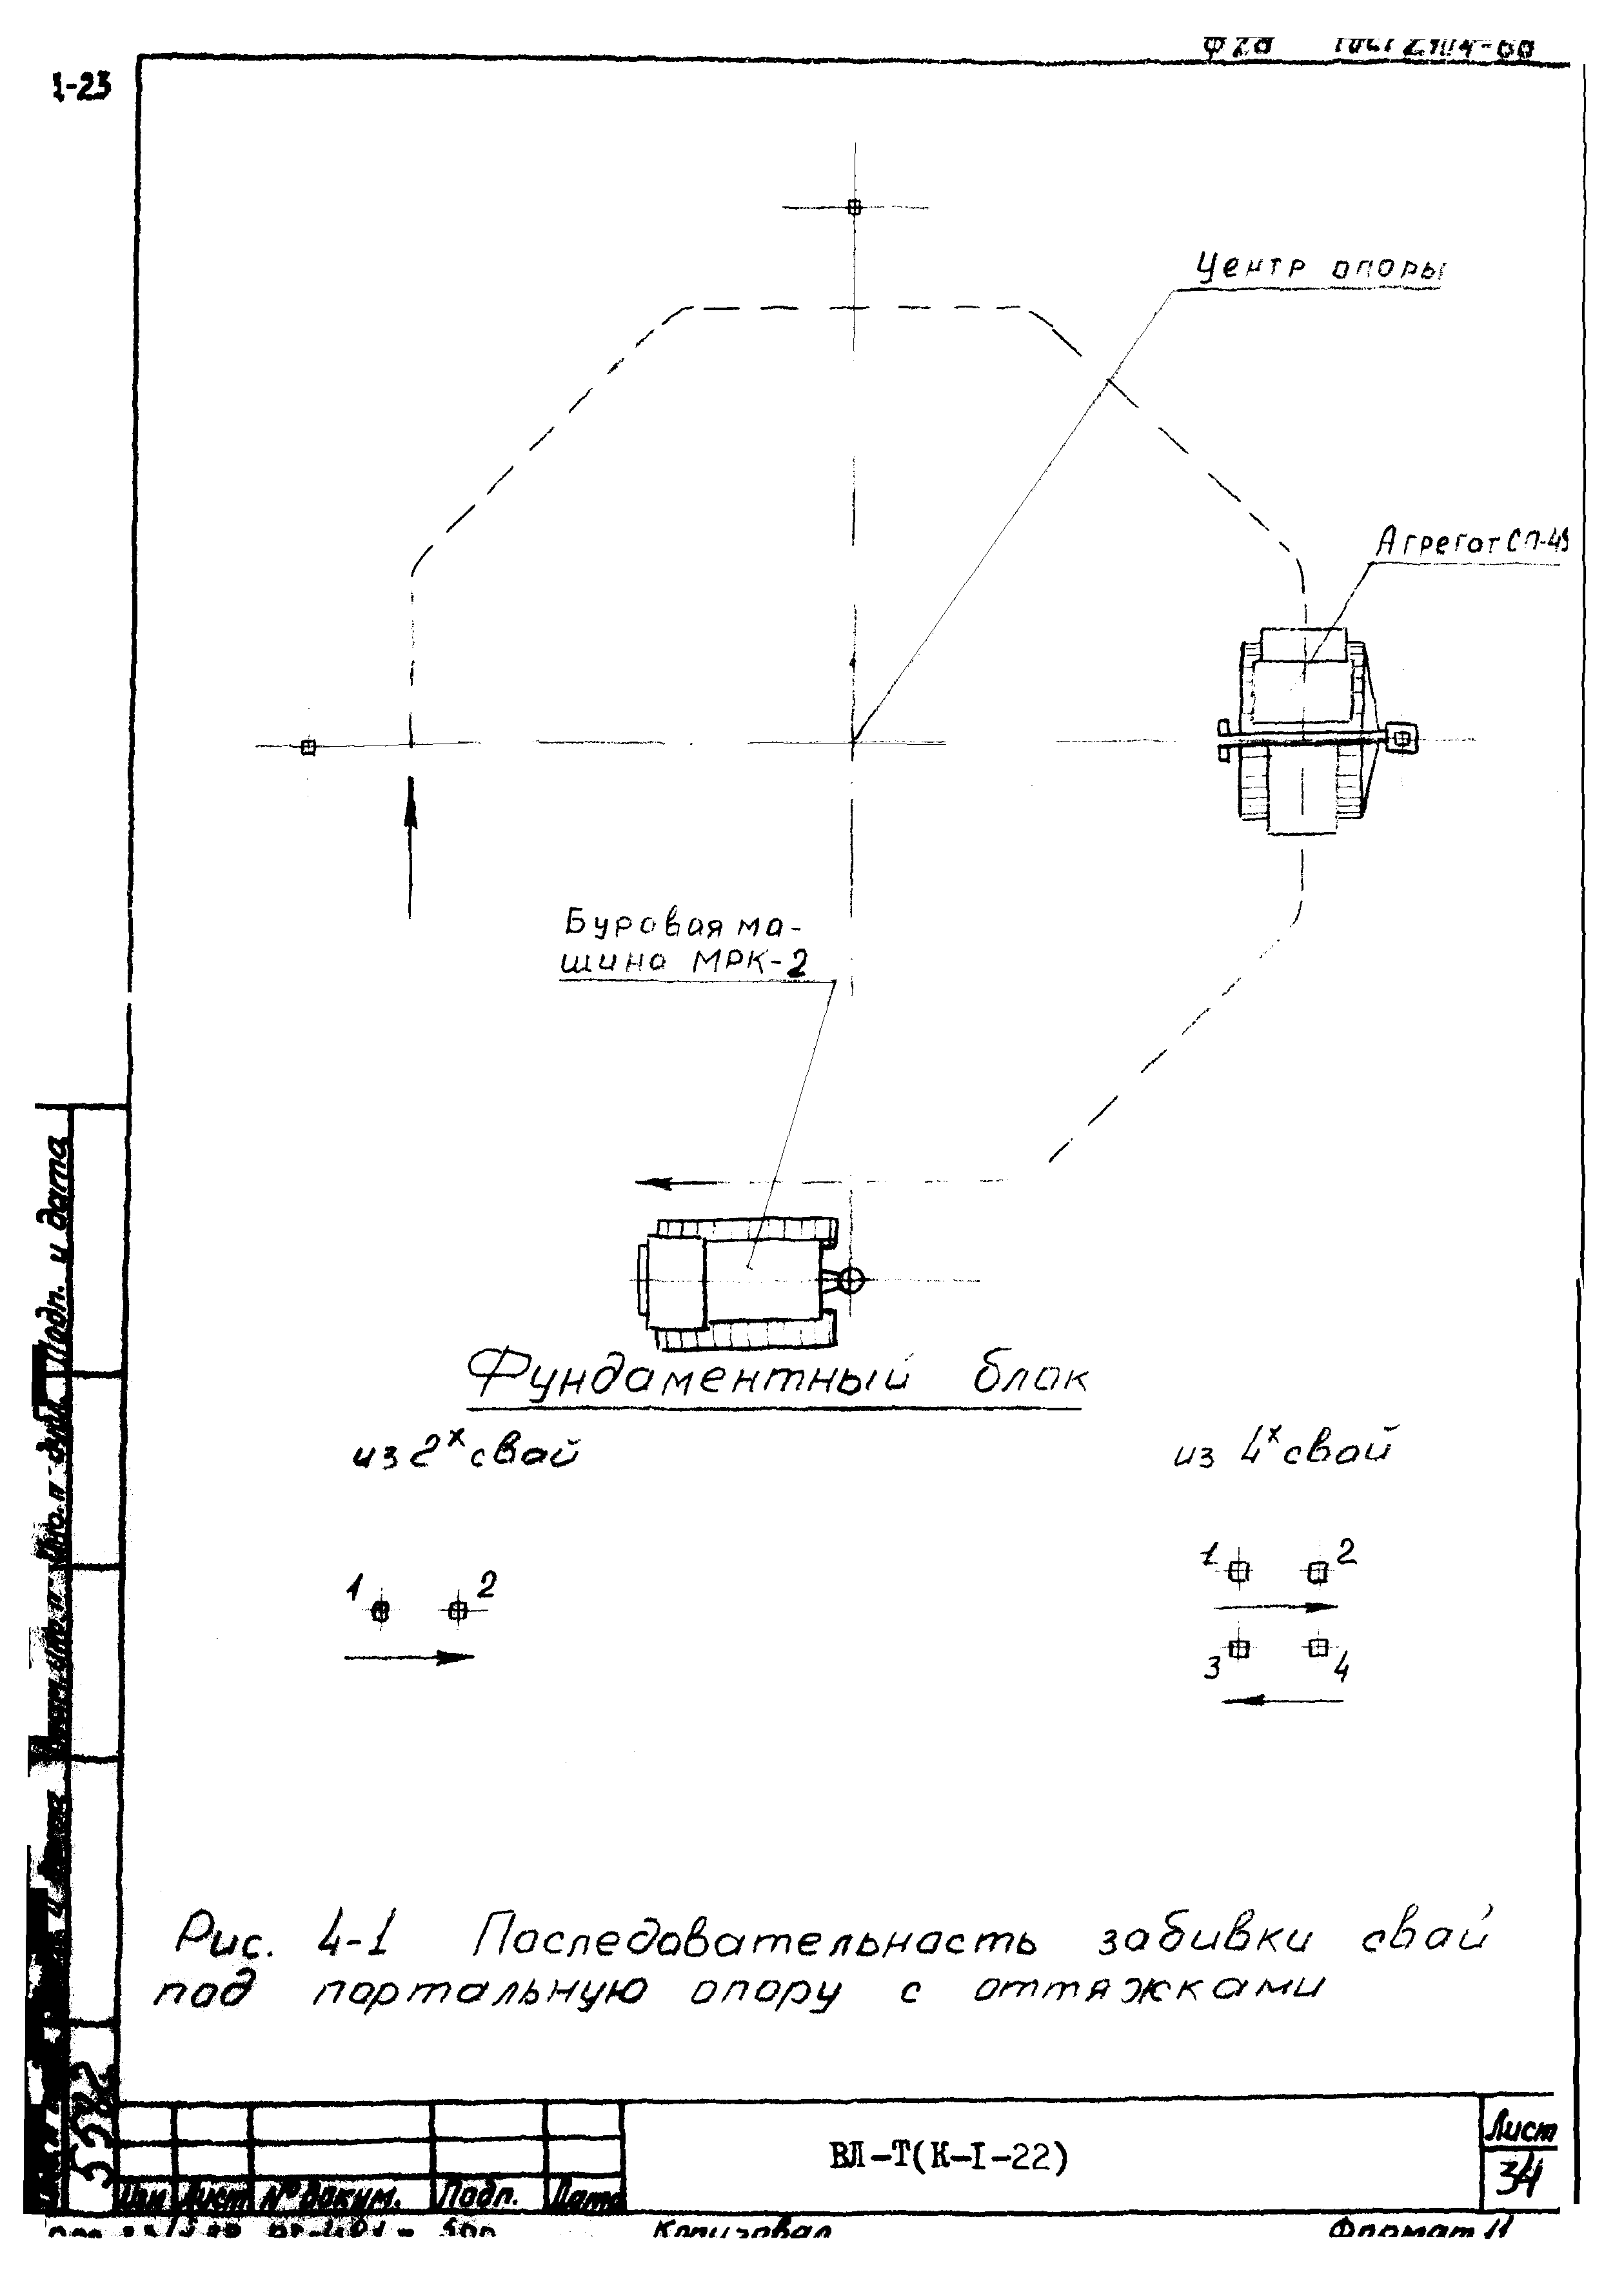 Технологическая карта К-1-22-4